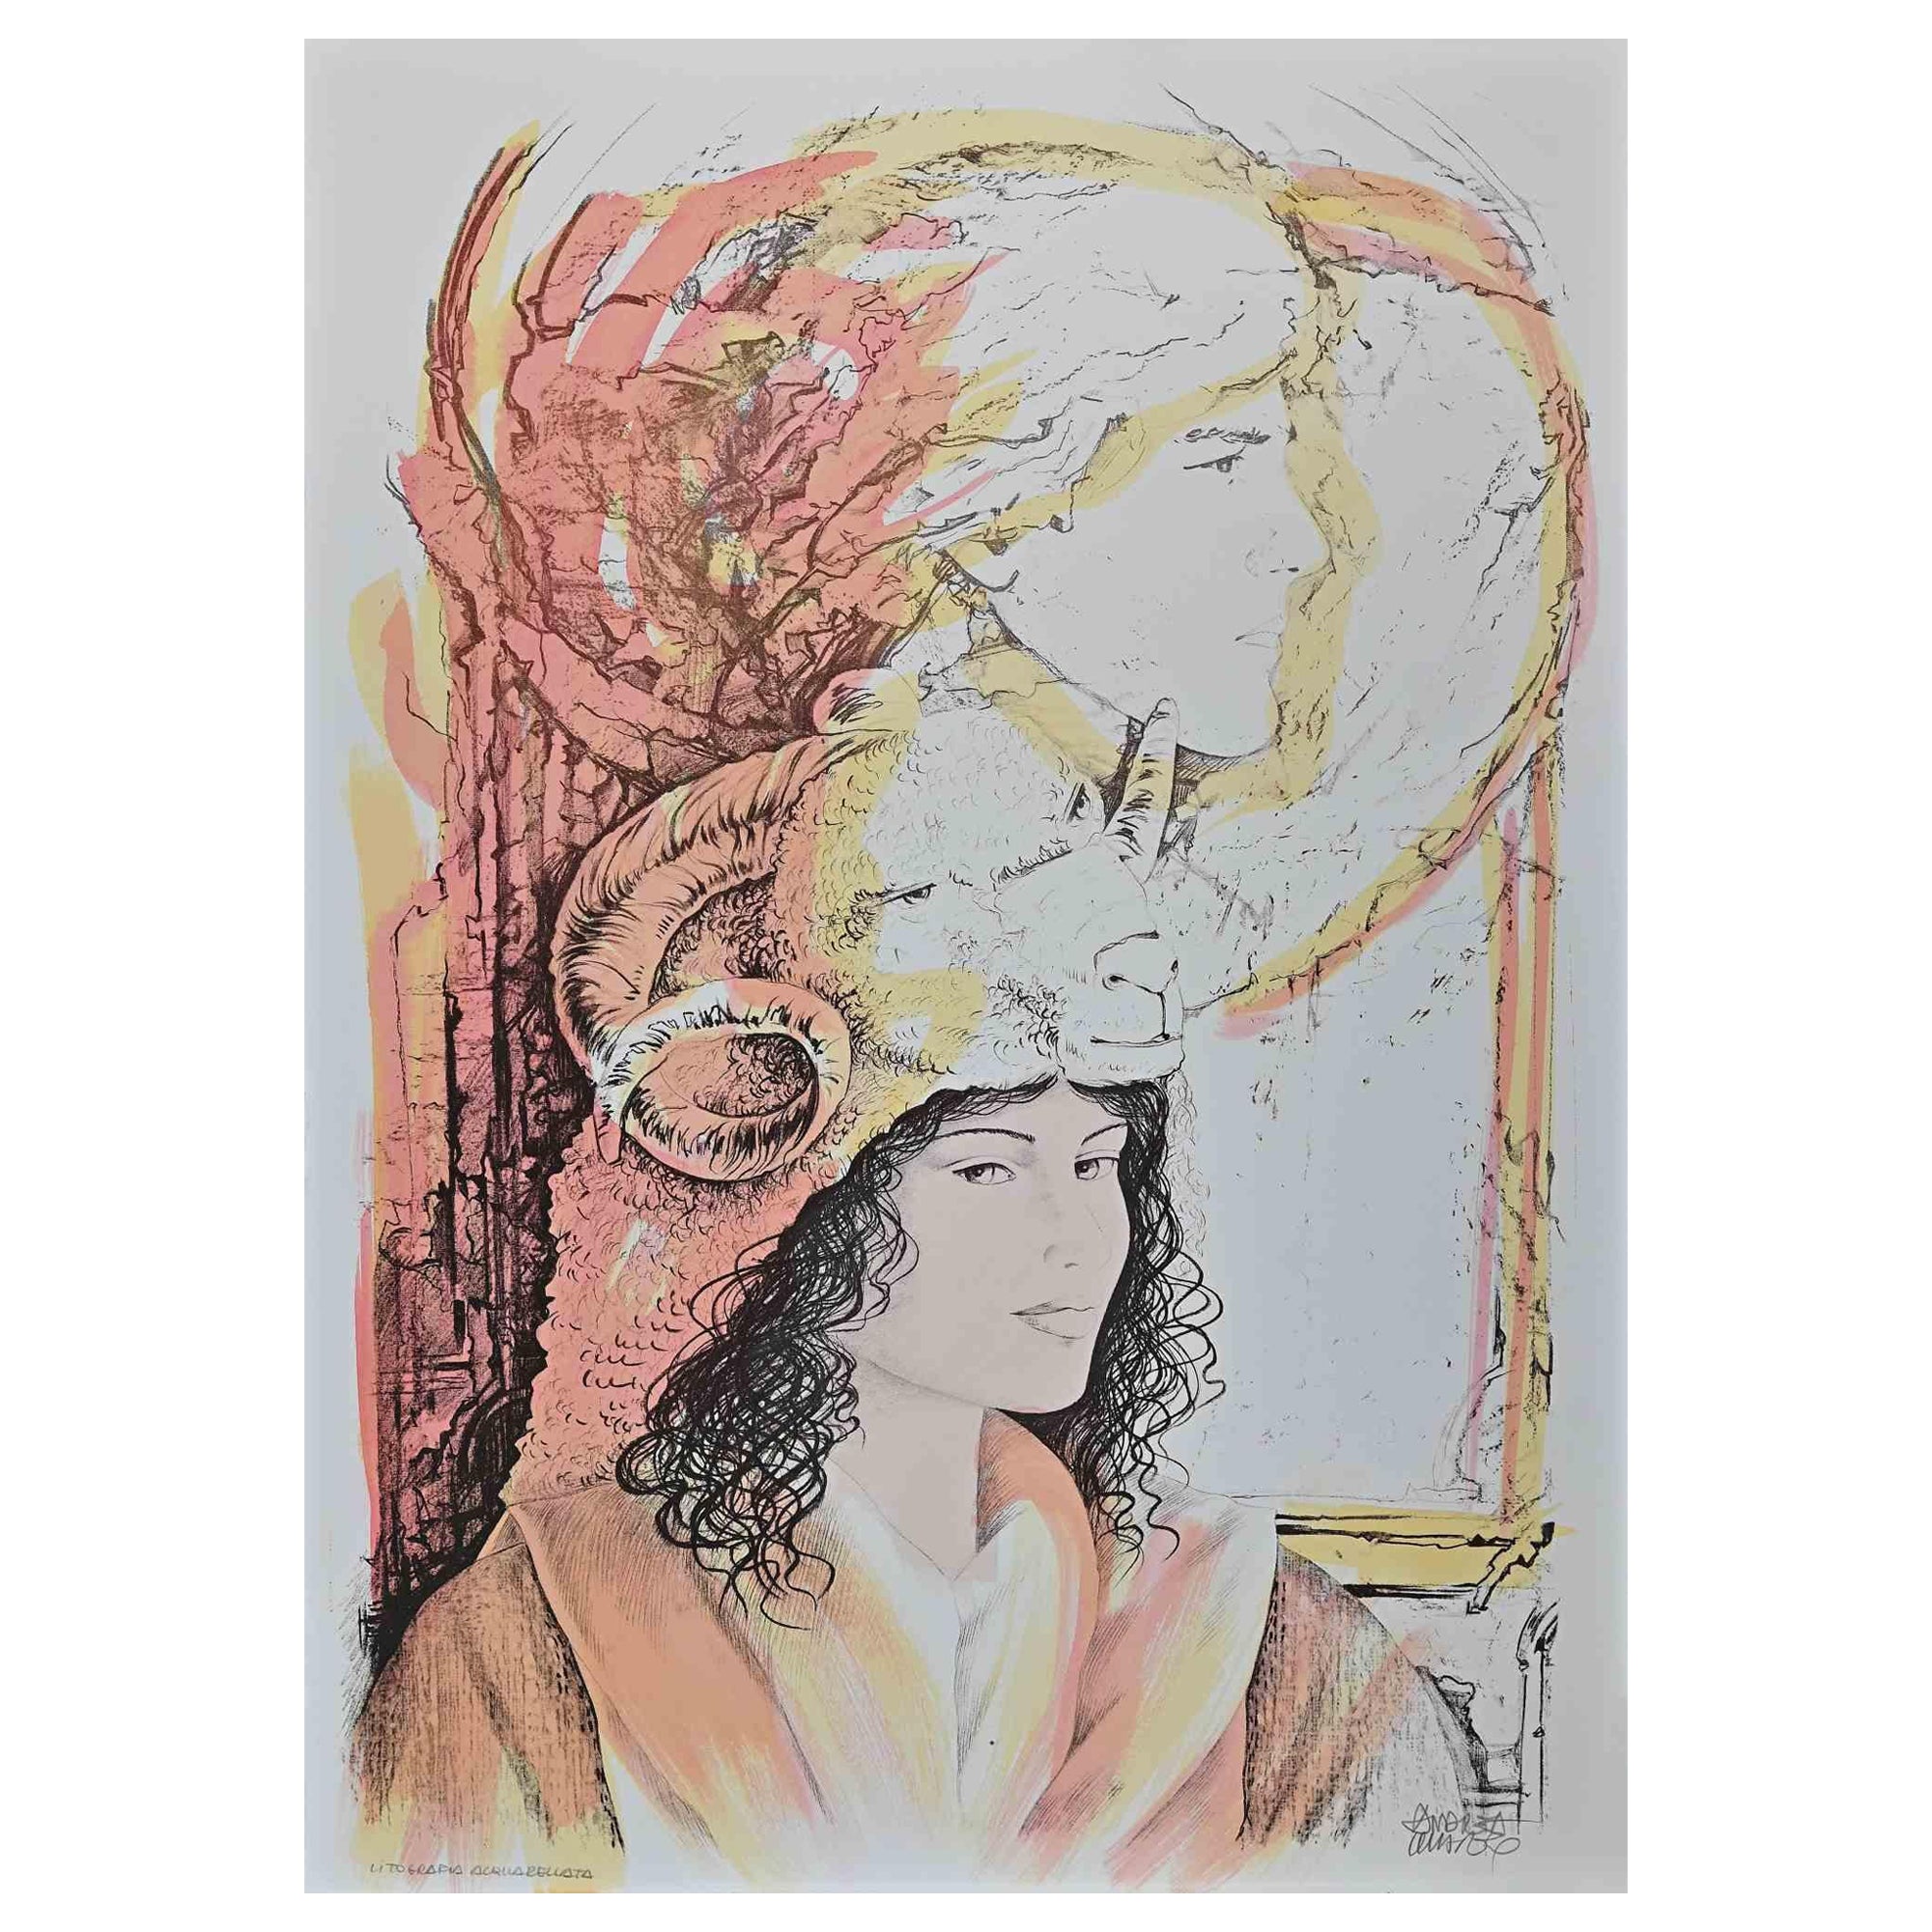 Andrea Quarto Figurative Print - Zodiac Lithograph - Aries - Hand-Colored Lithograph by A. Quarto - 1985